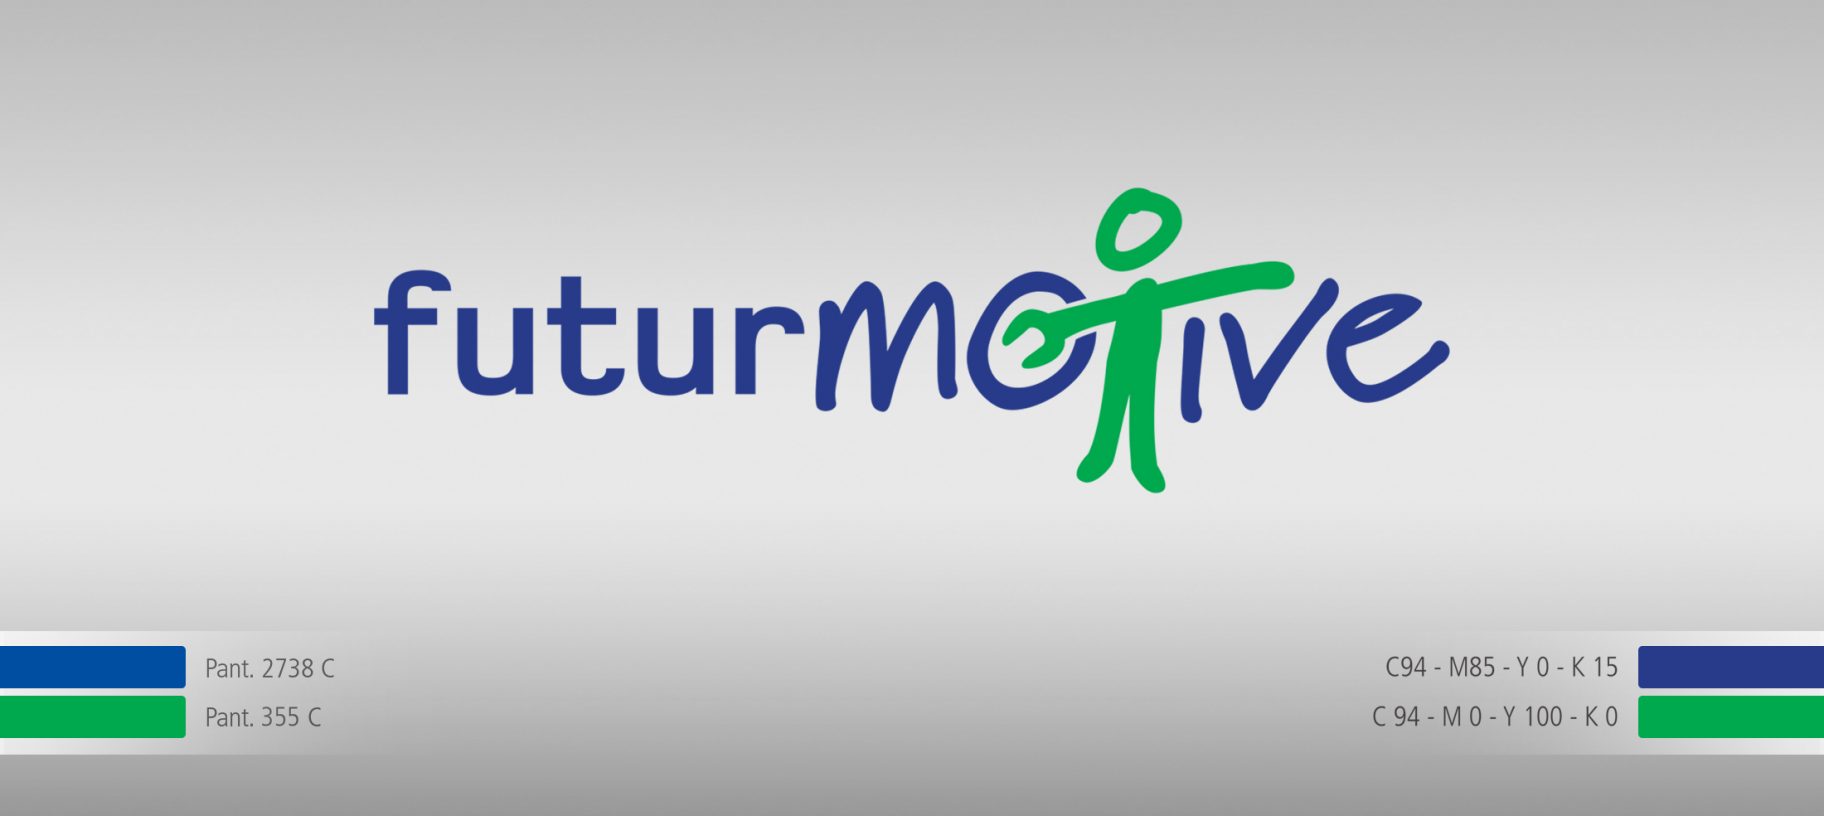 Autopromotec-futurmotive-logo-fiera